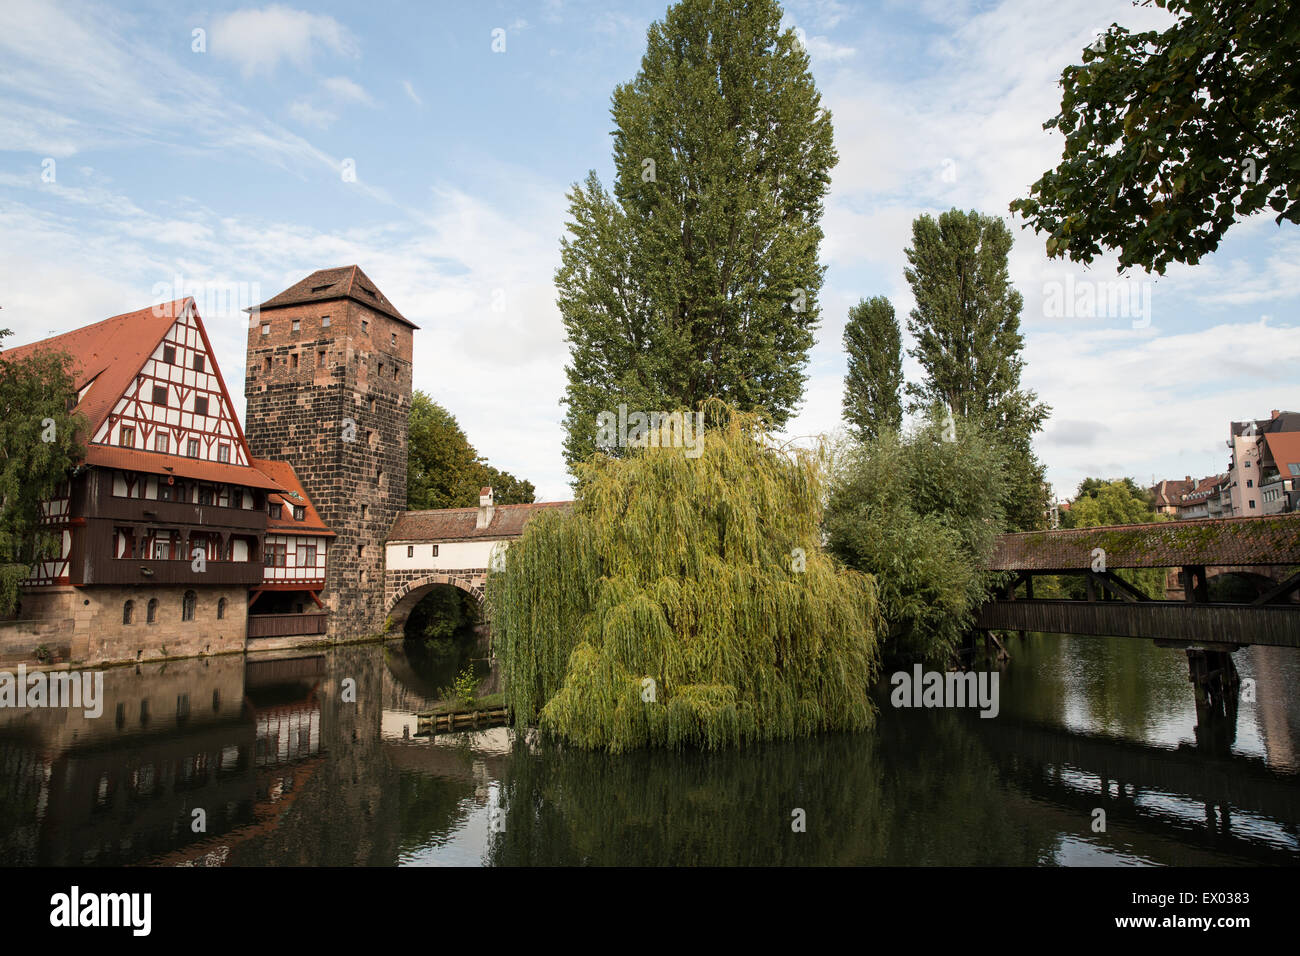 Vue du pont de la vieille ville, Nuremberg, Allemagne Banque D'Images